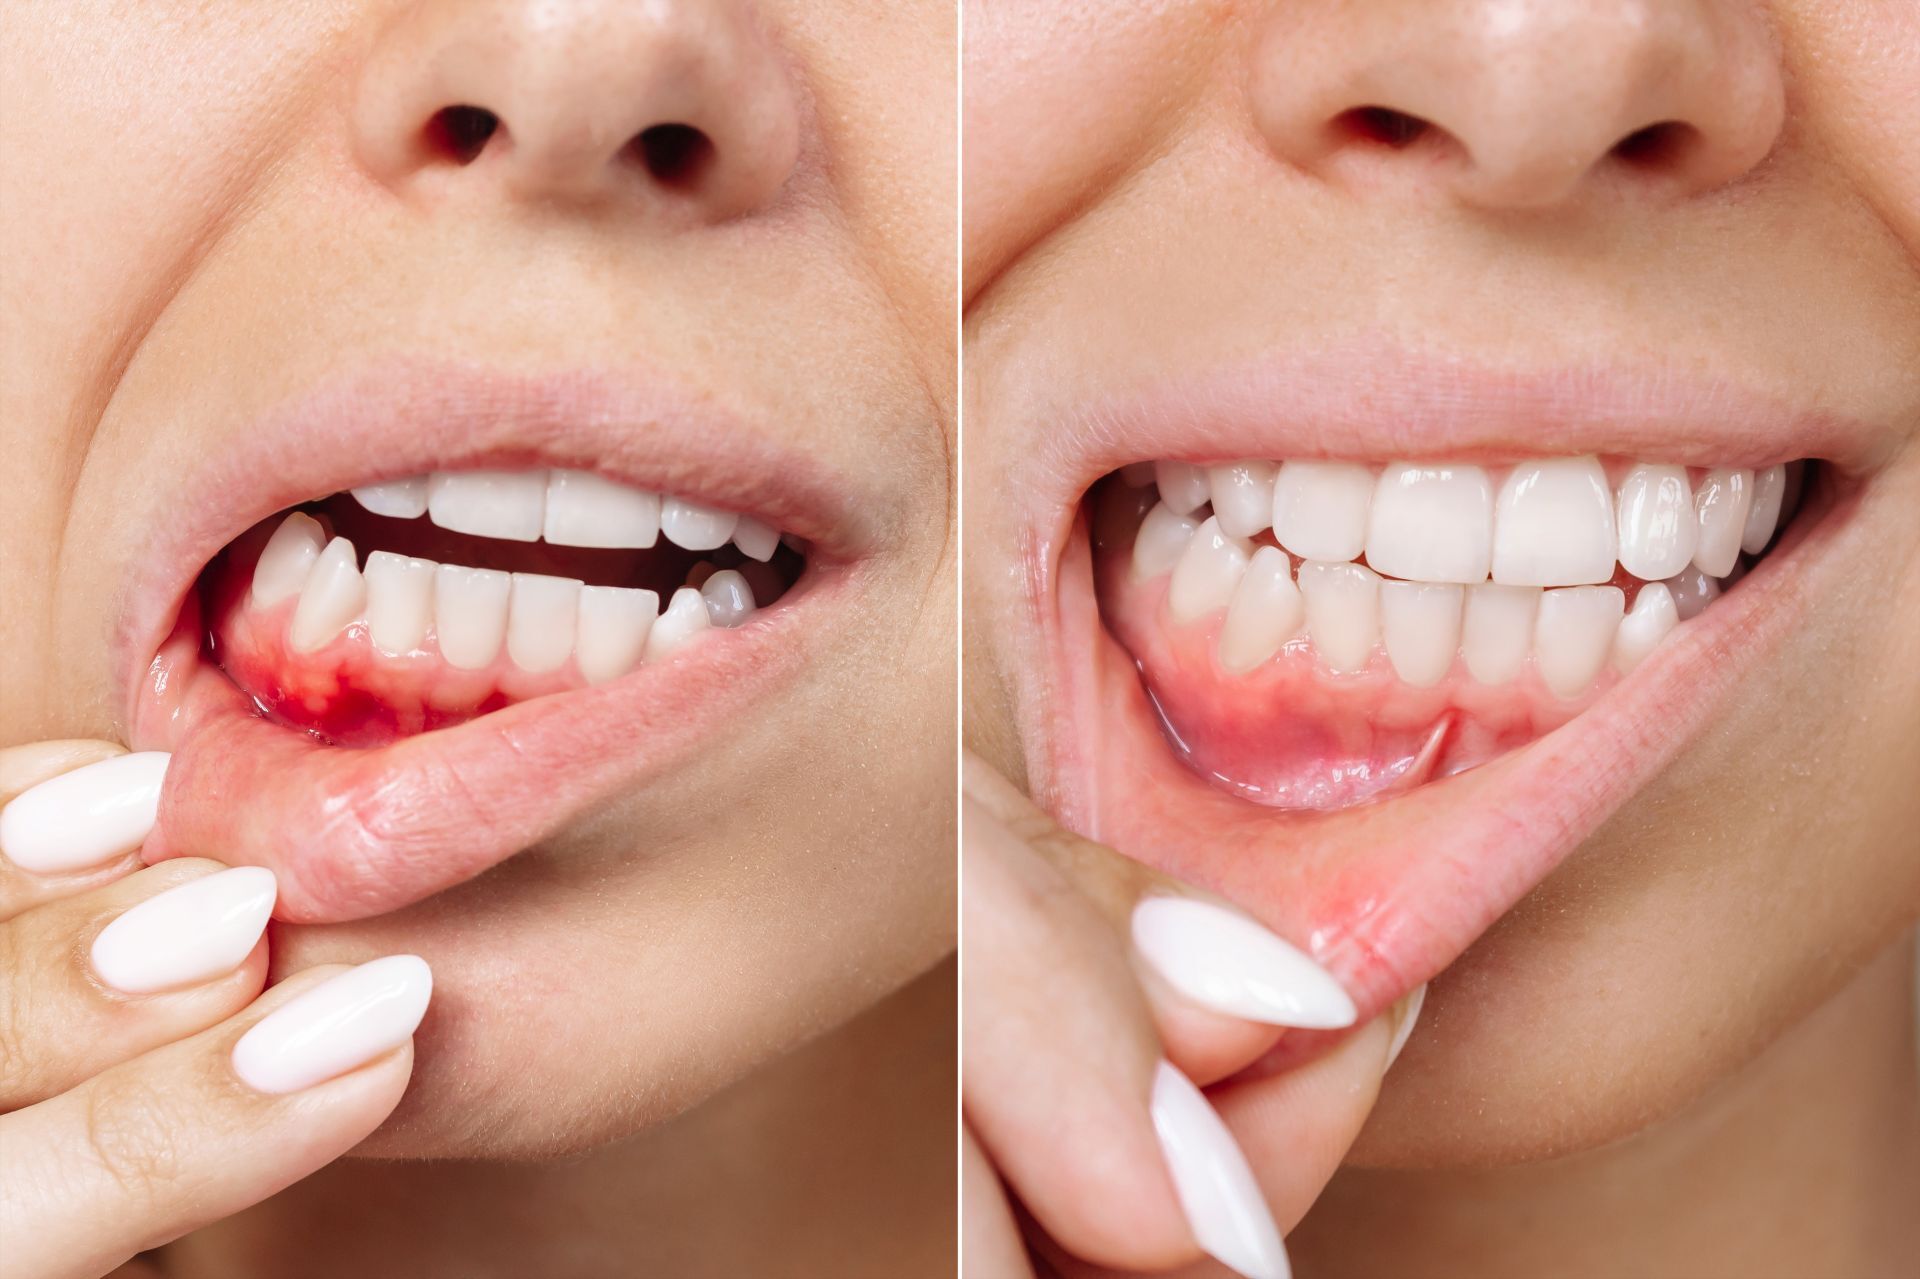 Vergleich: Entzündetes Zahnfleisch Vs. gesundes Zahnfleisch 